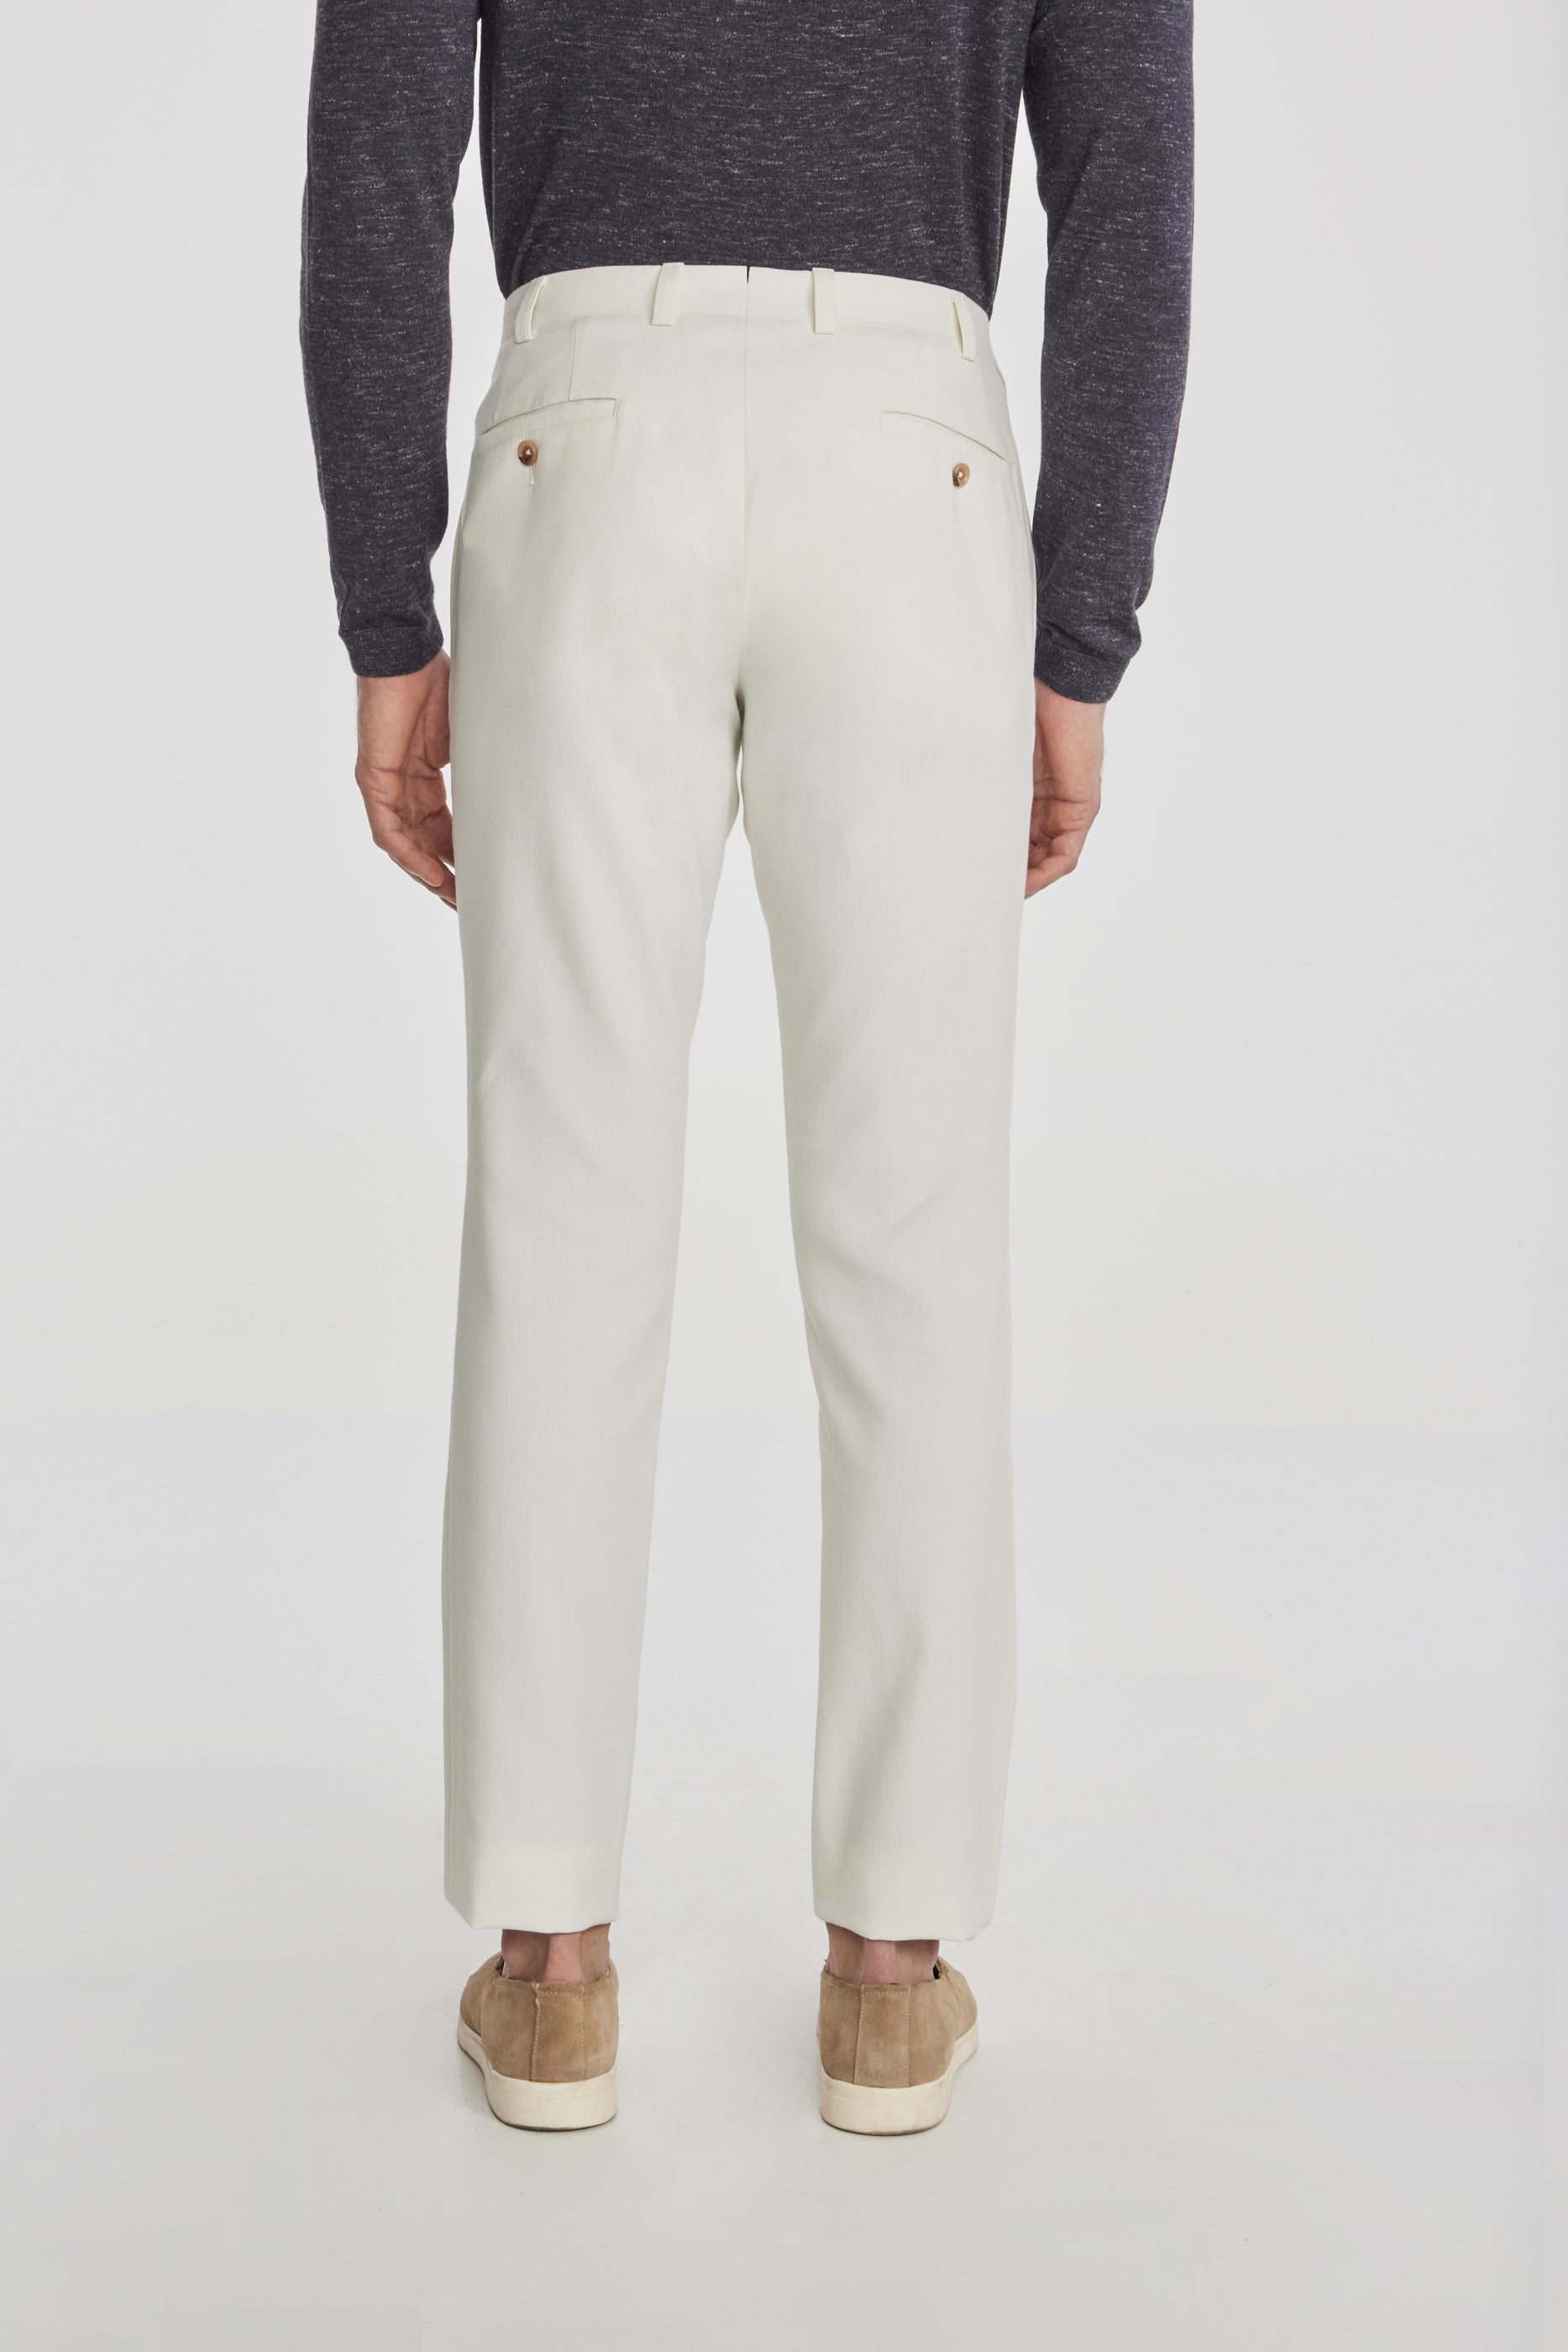 Vue alternative 3 Palmer pantalon en coton texturé et laine stretch en écru